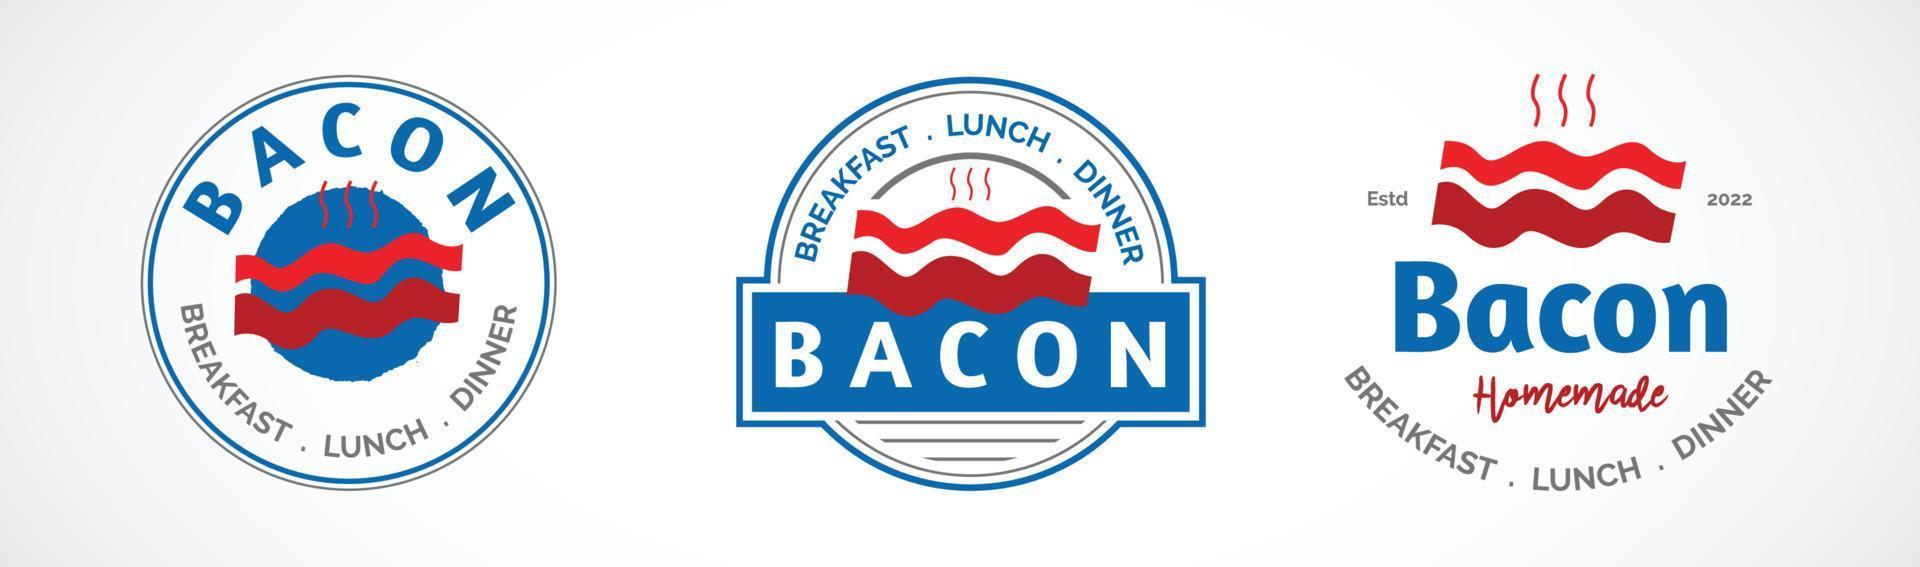 bacon logo restaurant vector